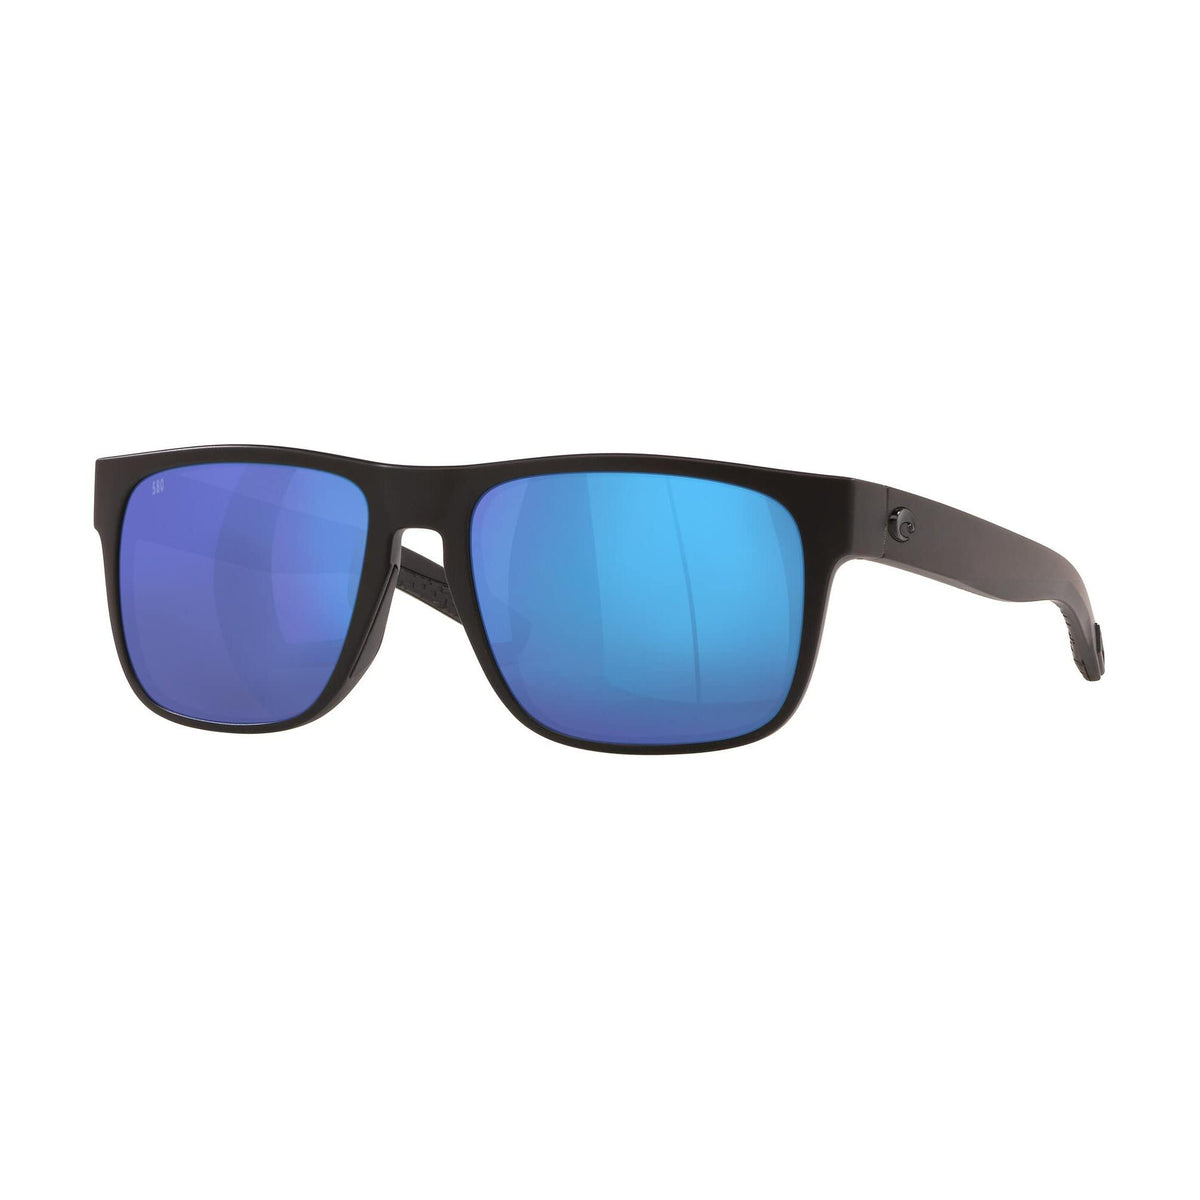 Costa Del Mar Spearo Sunglasses